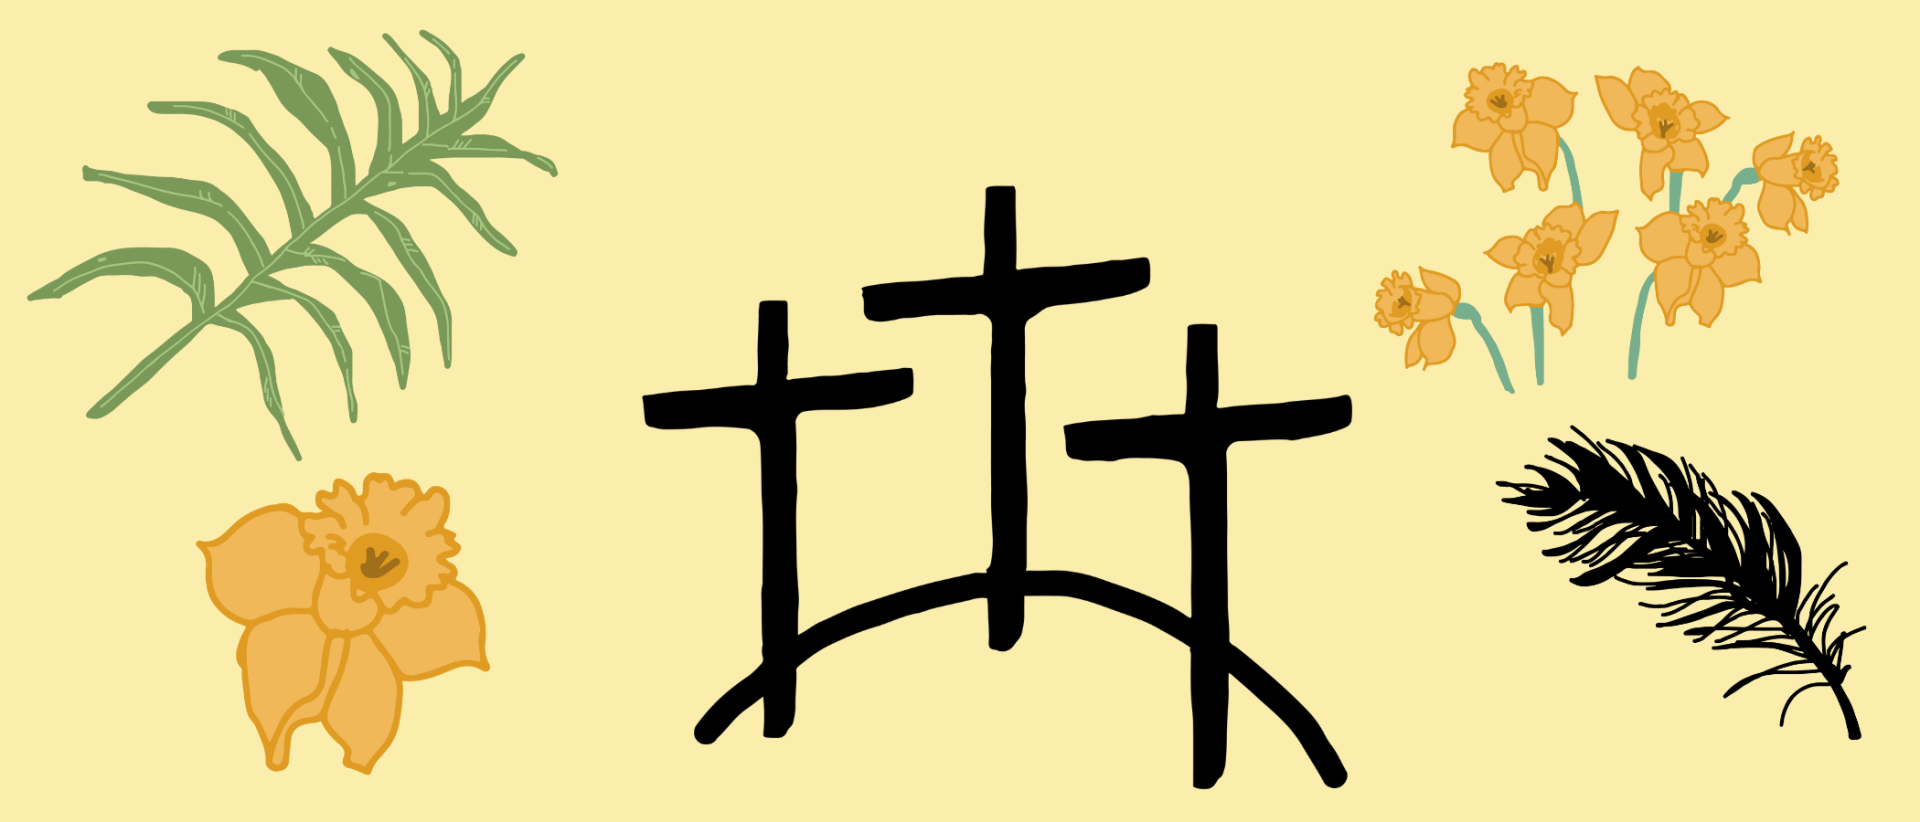 Piirroskuvissa keltaisella pohjalla kolme mustaa ristiä sekä palmunlehvä, sulka ja pääsiäisliljoja